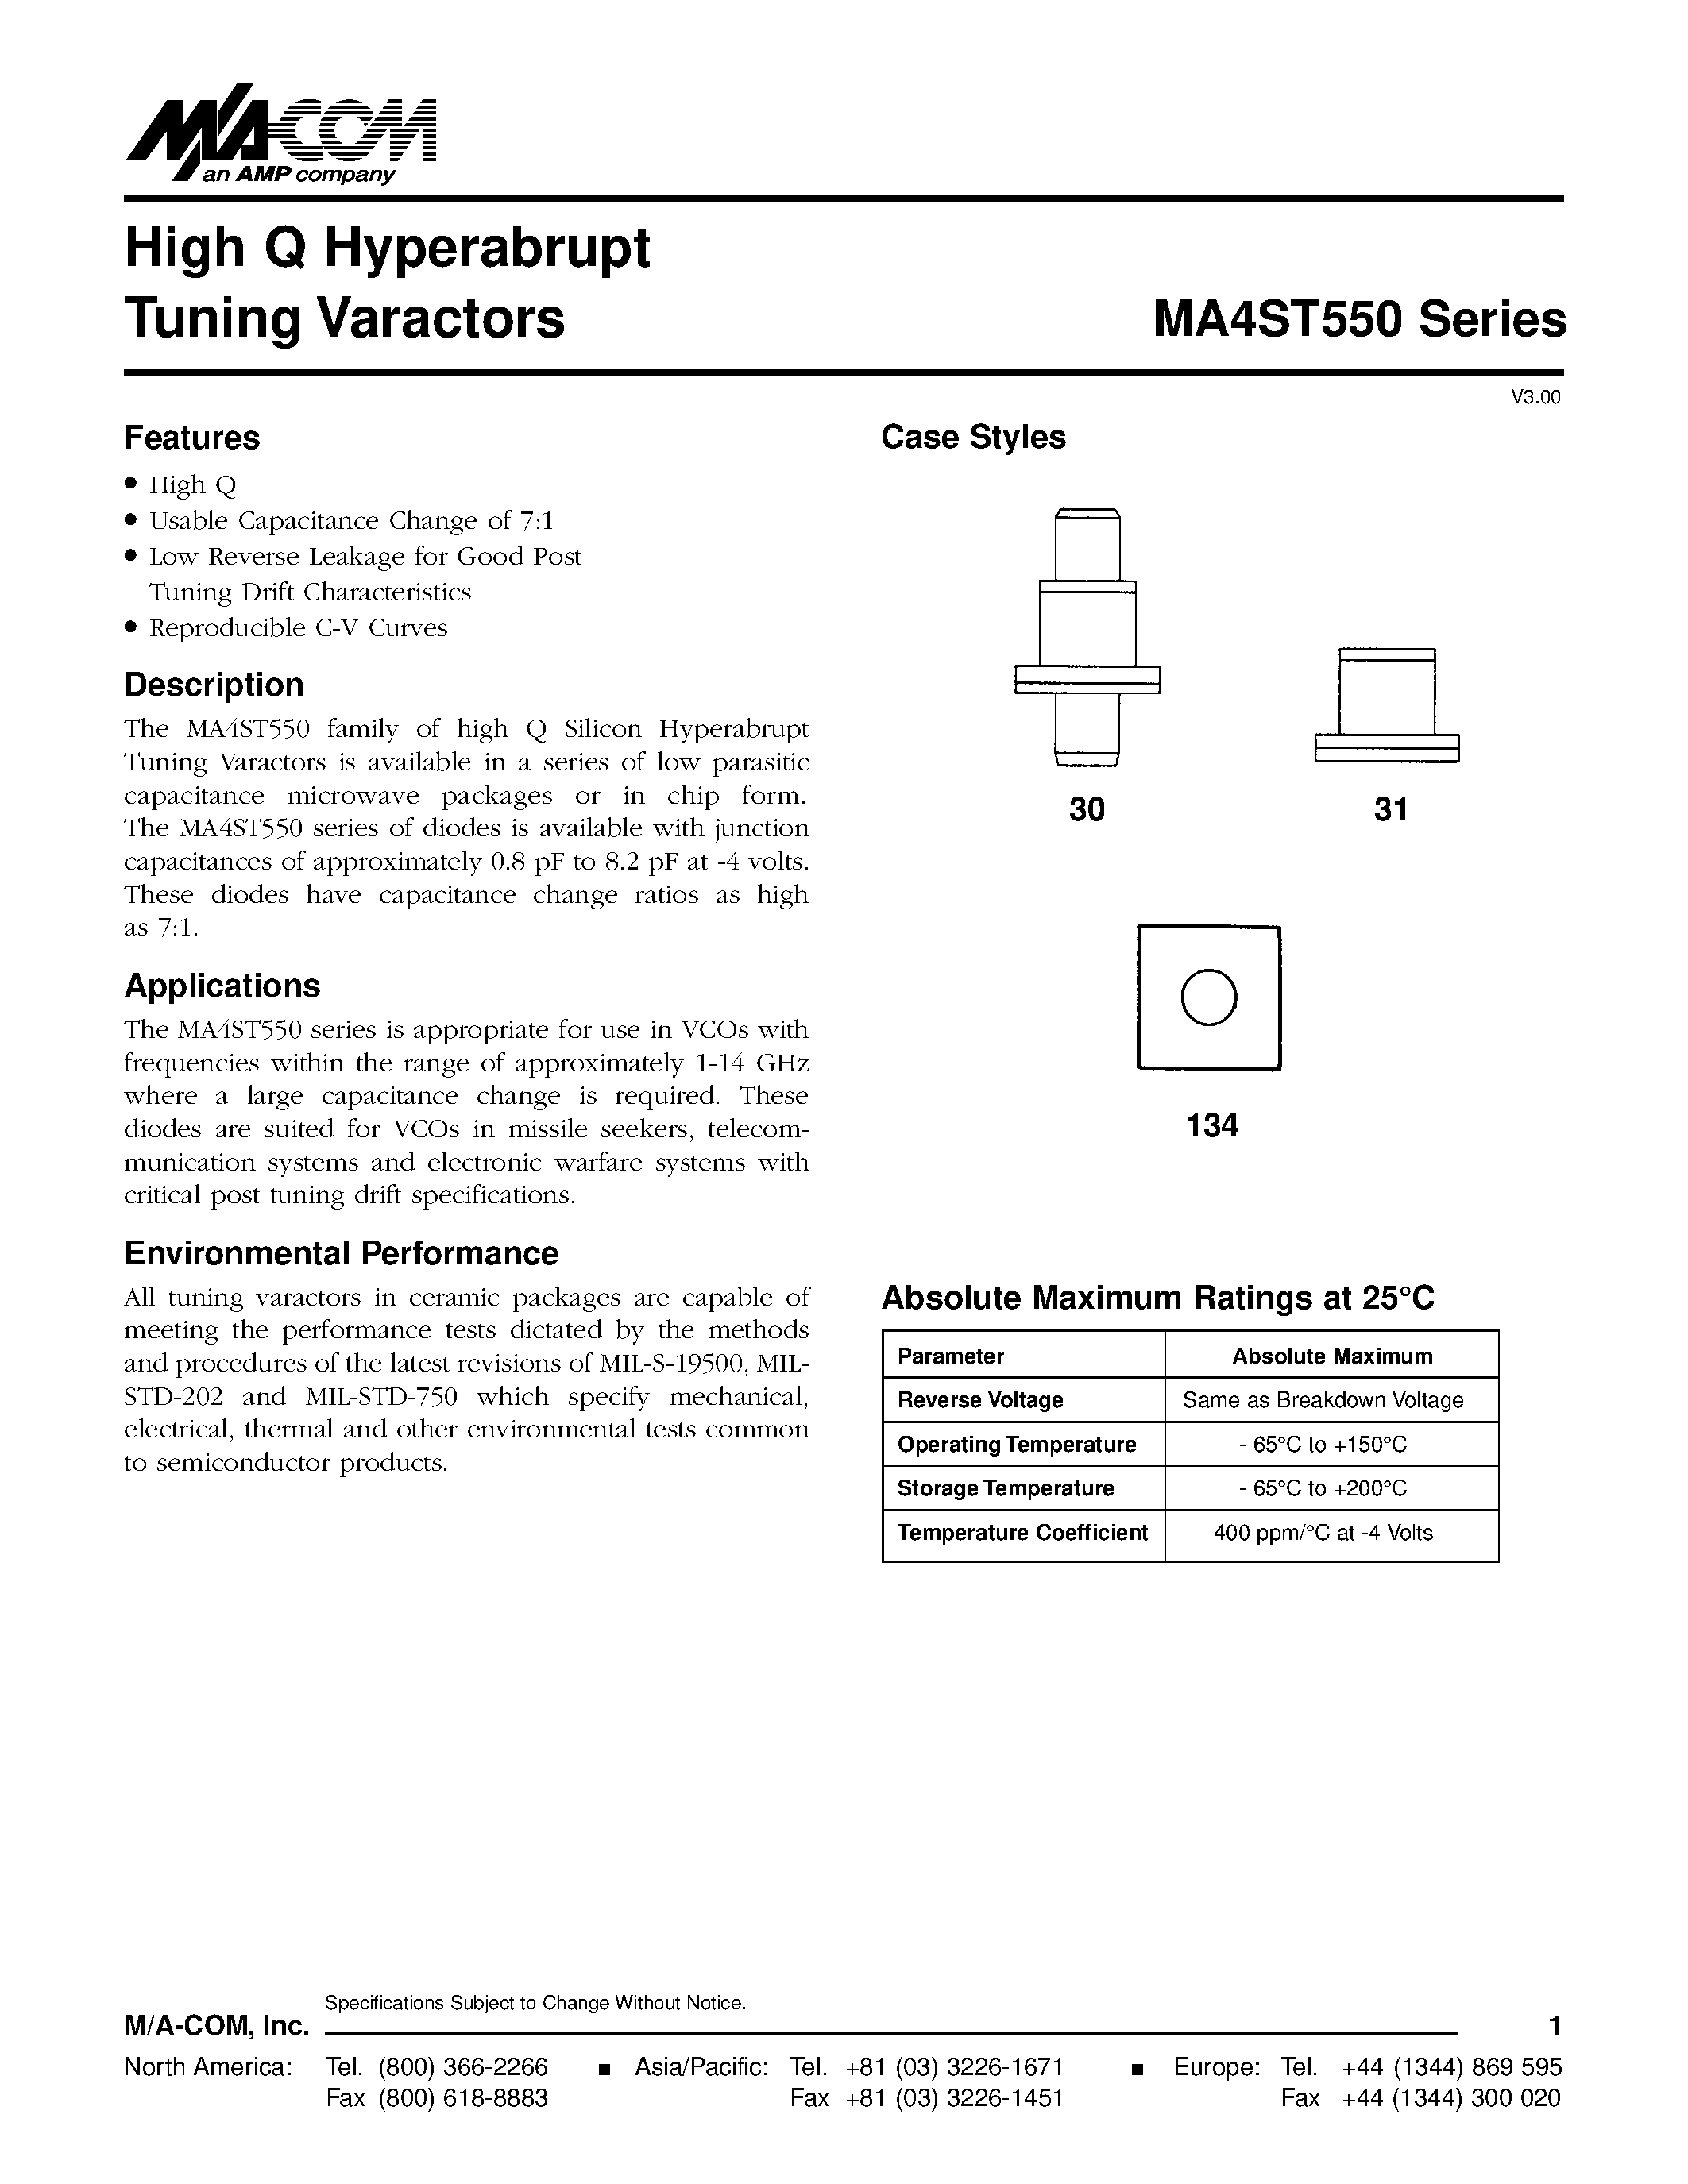 Даташит MA4ST563 - High Q Hyperabrupt Tuning Varactors страница 1